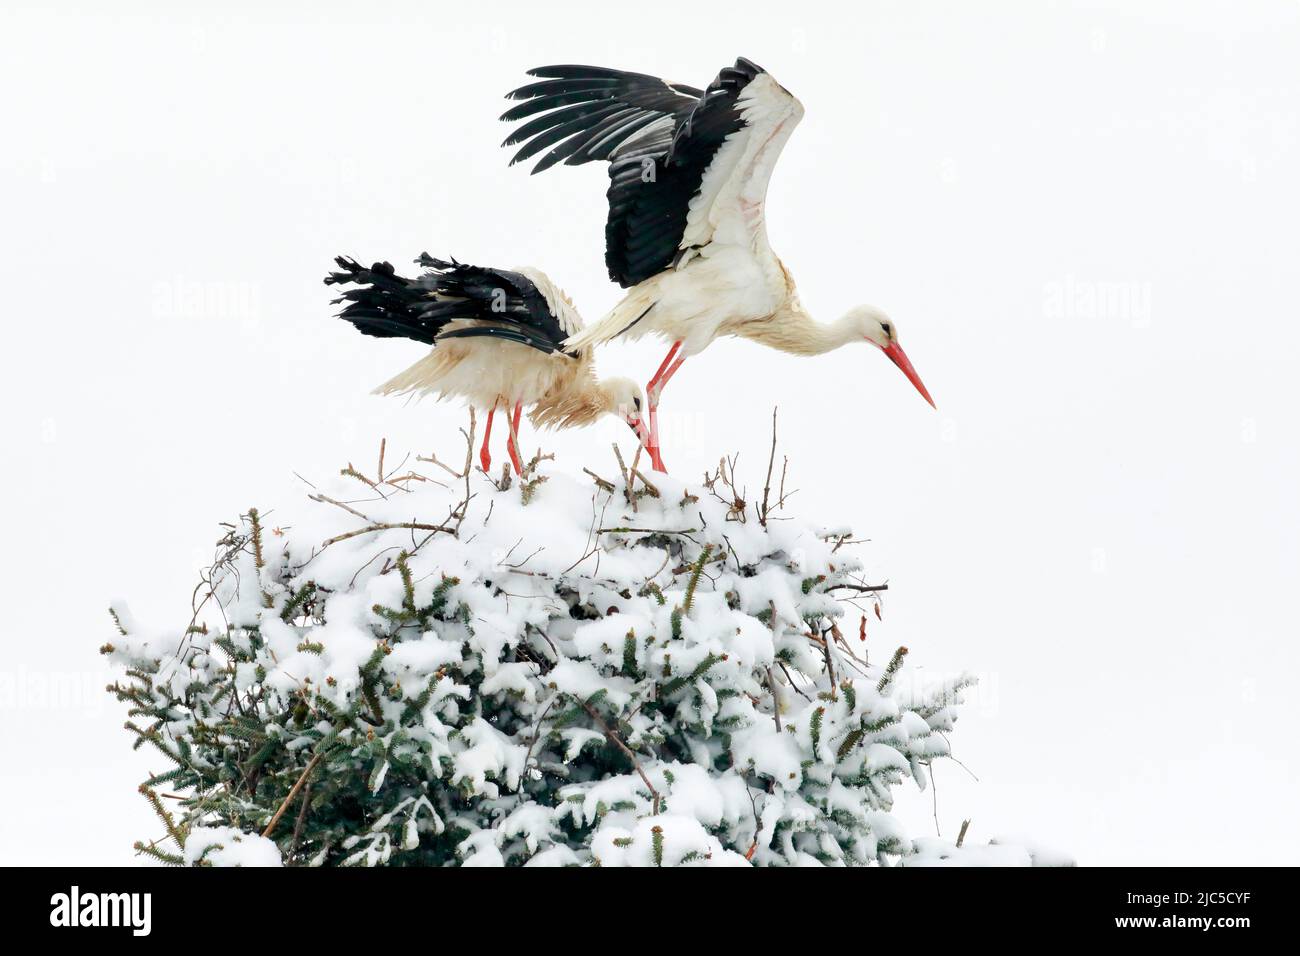 Weißstorchen Paar steht inmitten eines Schneesturms im Nest, das Männchen fliegt für die Nahrungssuche davon, Brütezeit im Frühling, Oetwil am See Foto de stock